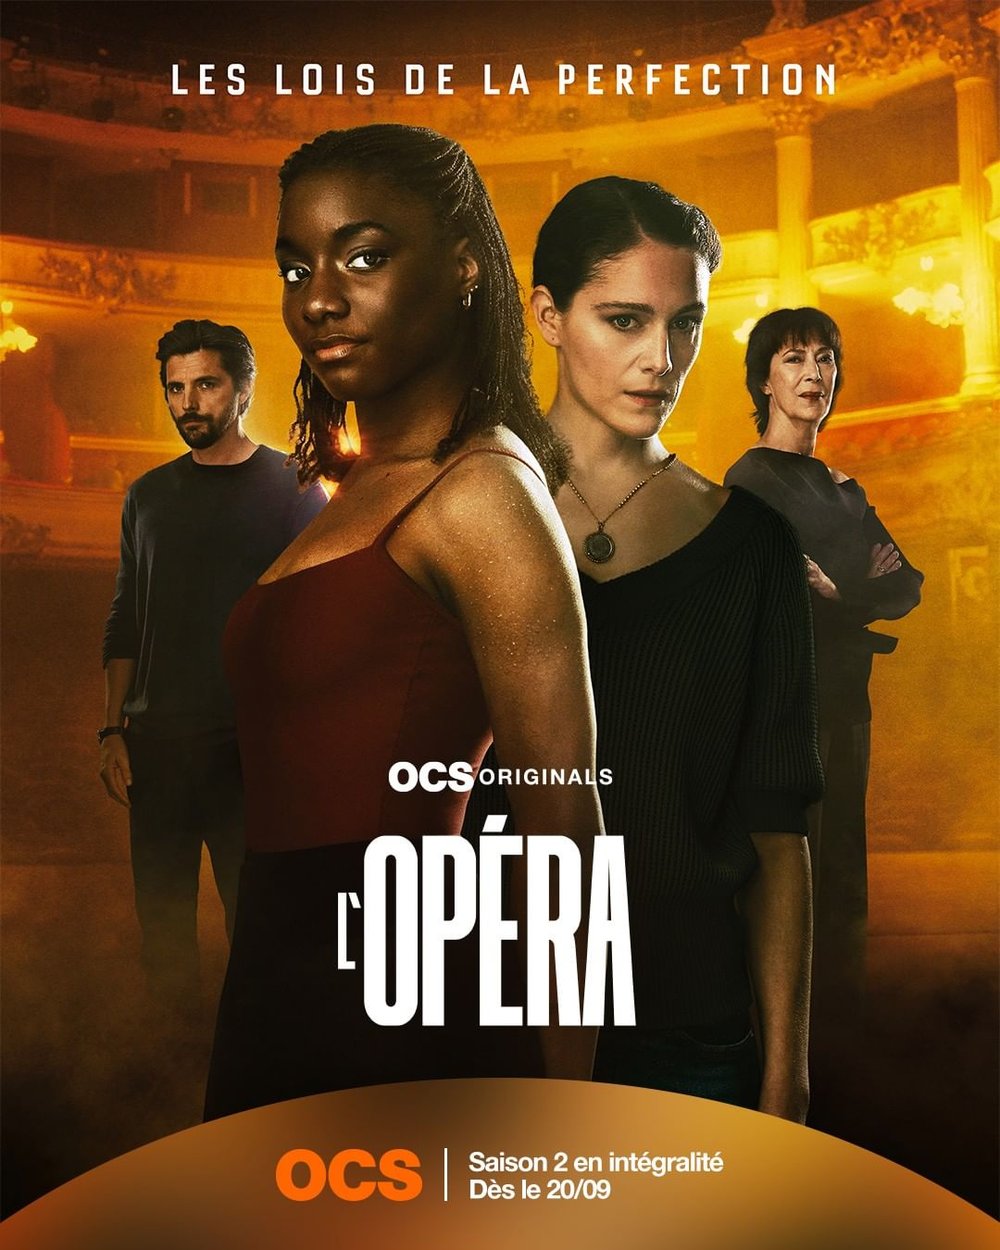 Suzy Bemba Opéra Serie OCS Studio